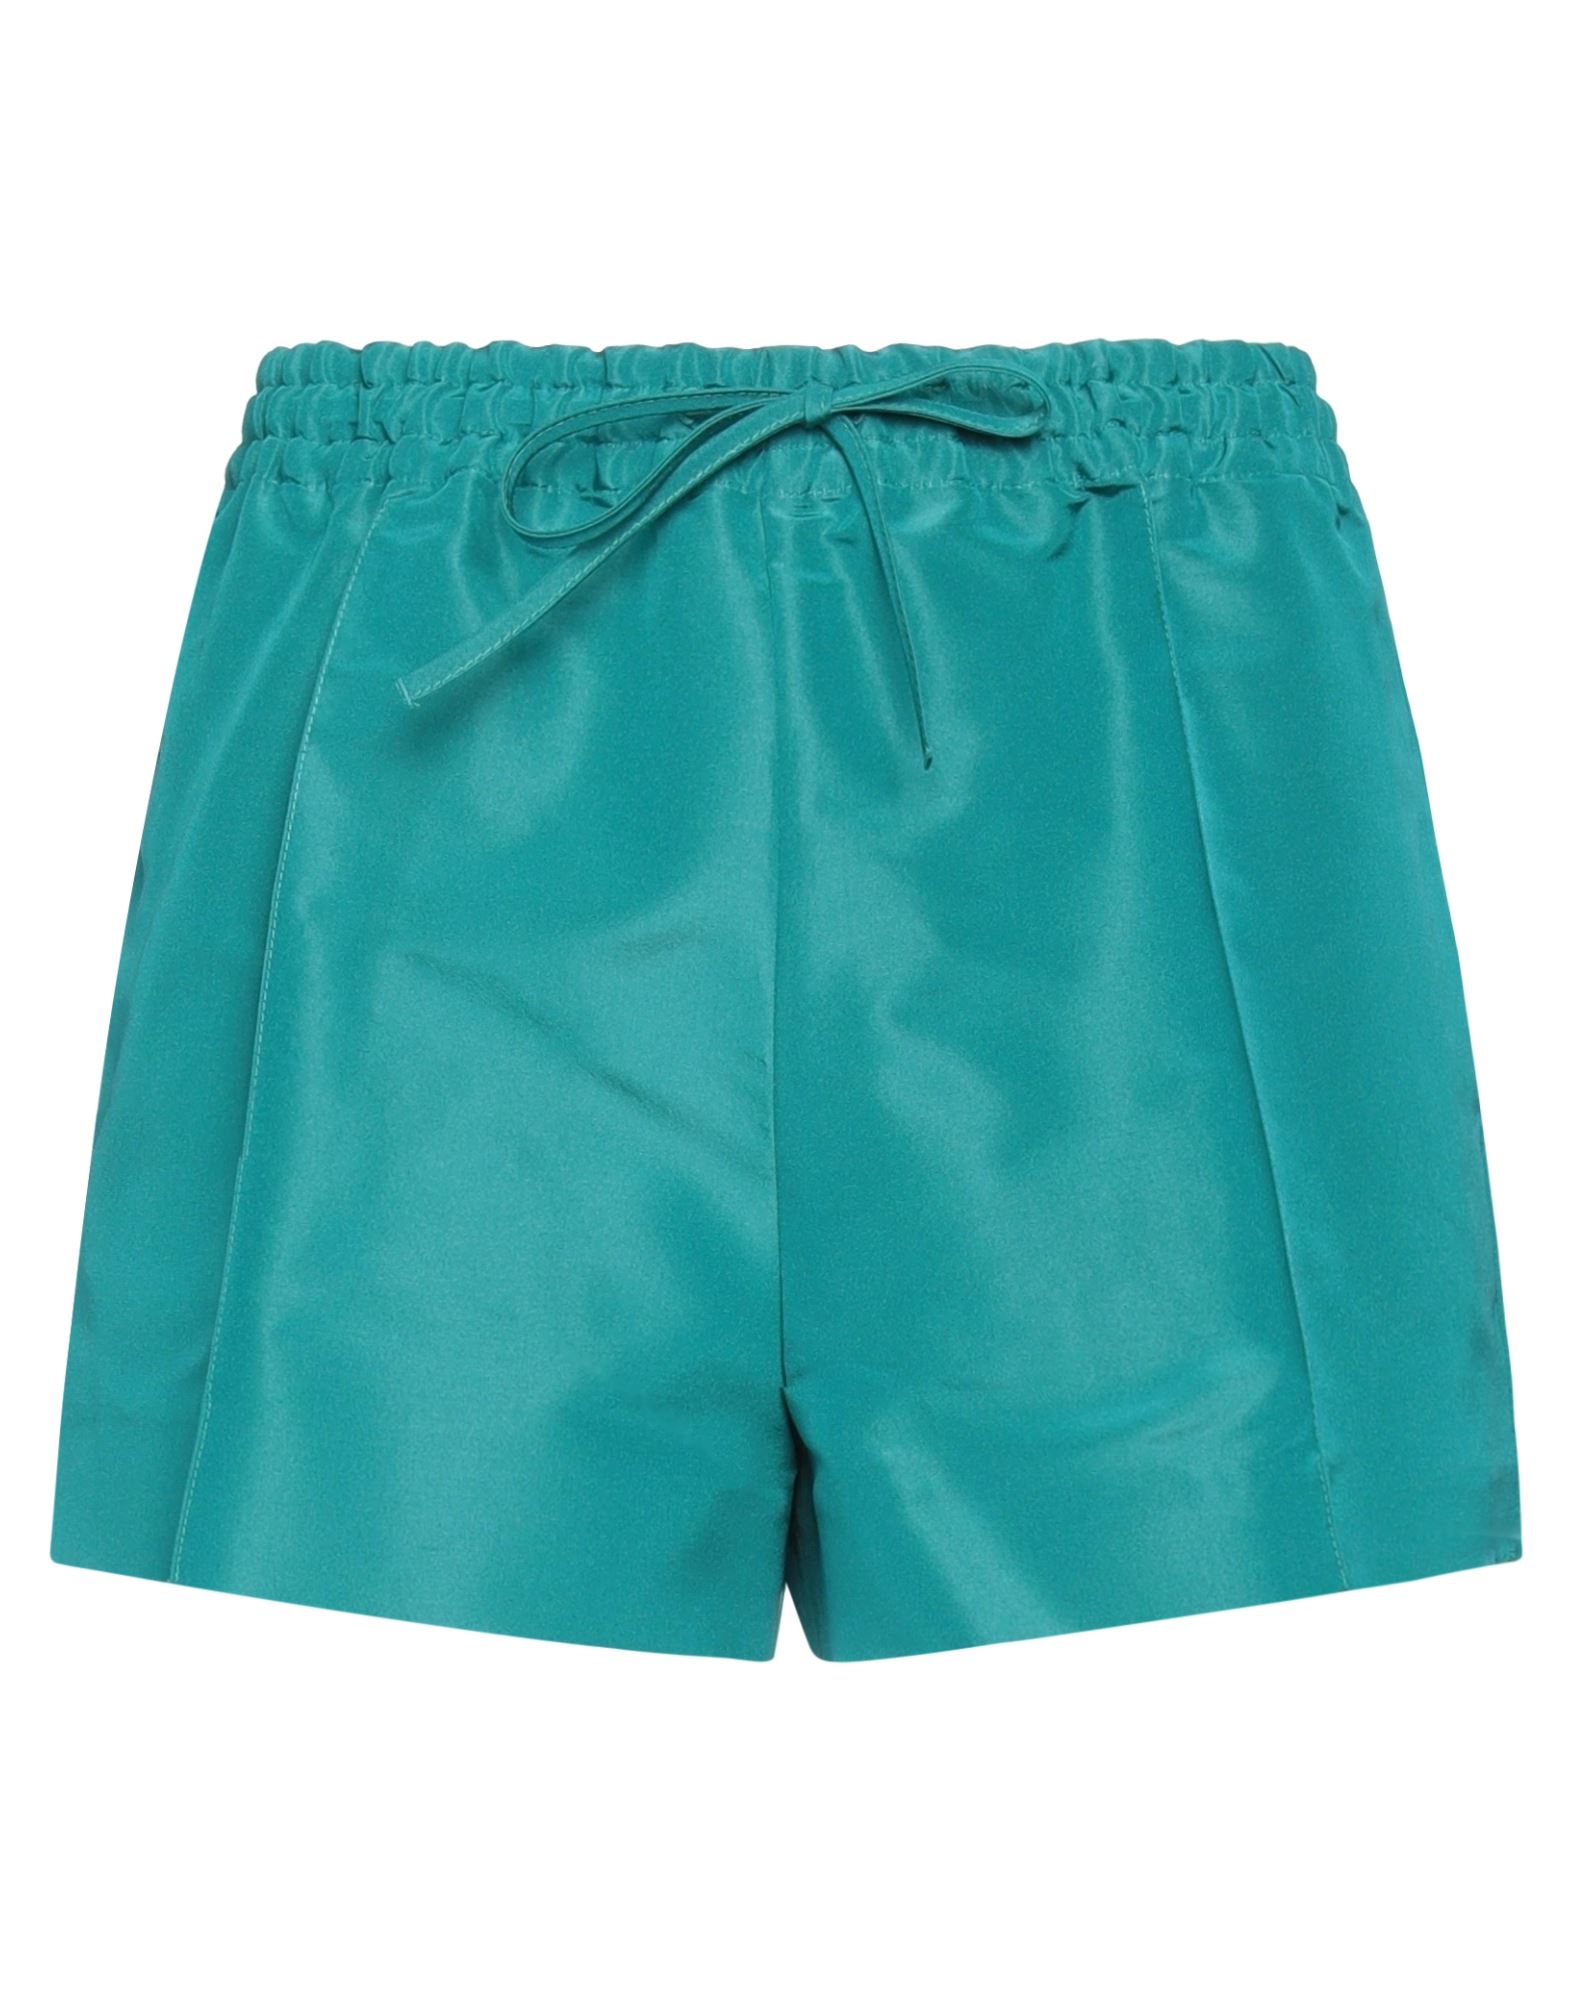 Valentino Garavani Woman Shorts & Bermuda Shorts Emerald Green Size 8 Silk